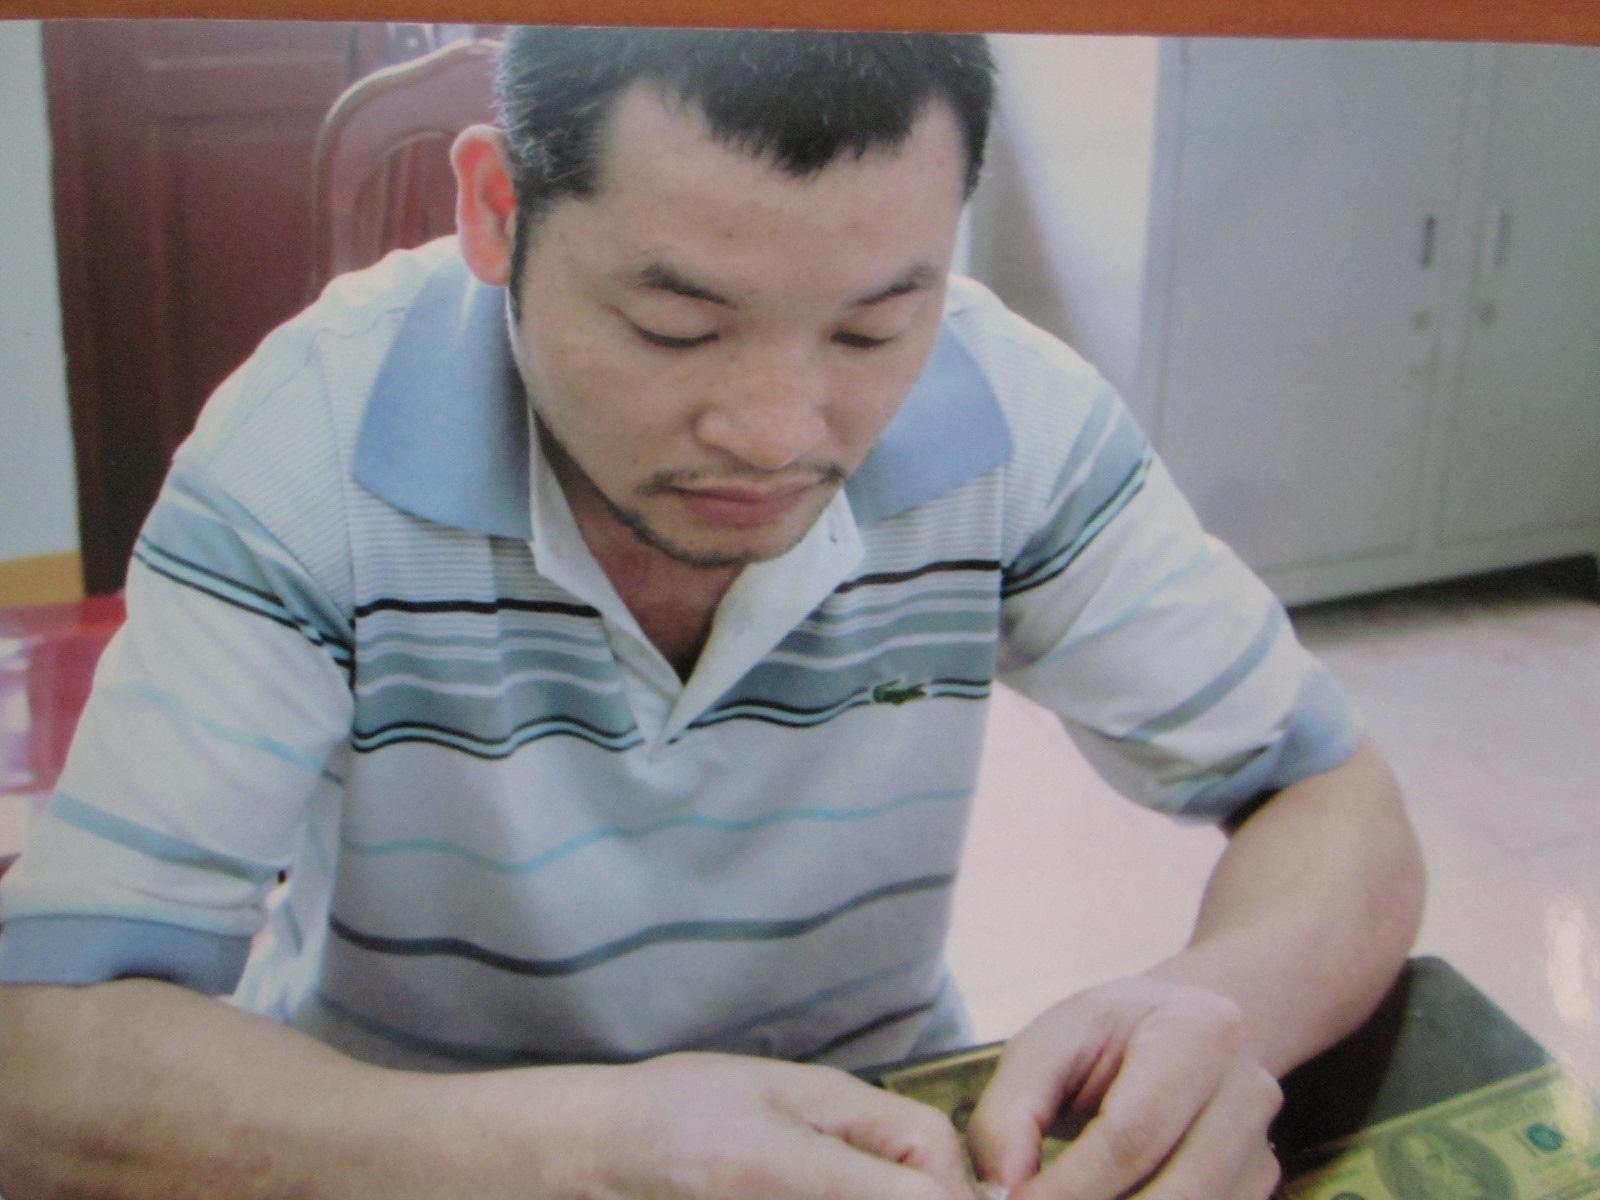 An ninh - Hình sự - Lật tẩy 'công nghệ' làm giả chứng minh thư nhân dân ở Bắc Giang